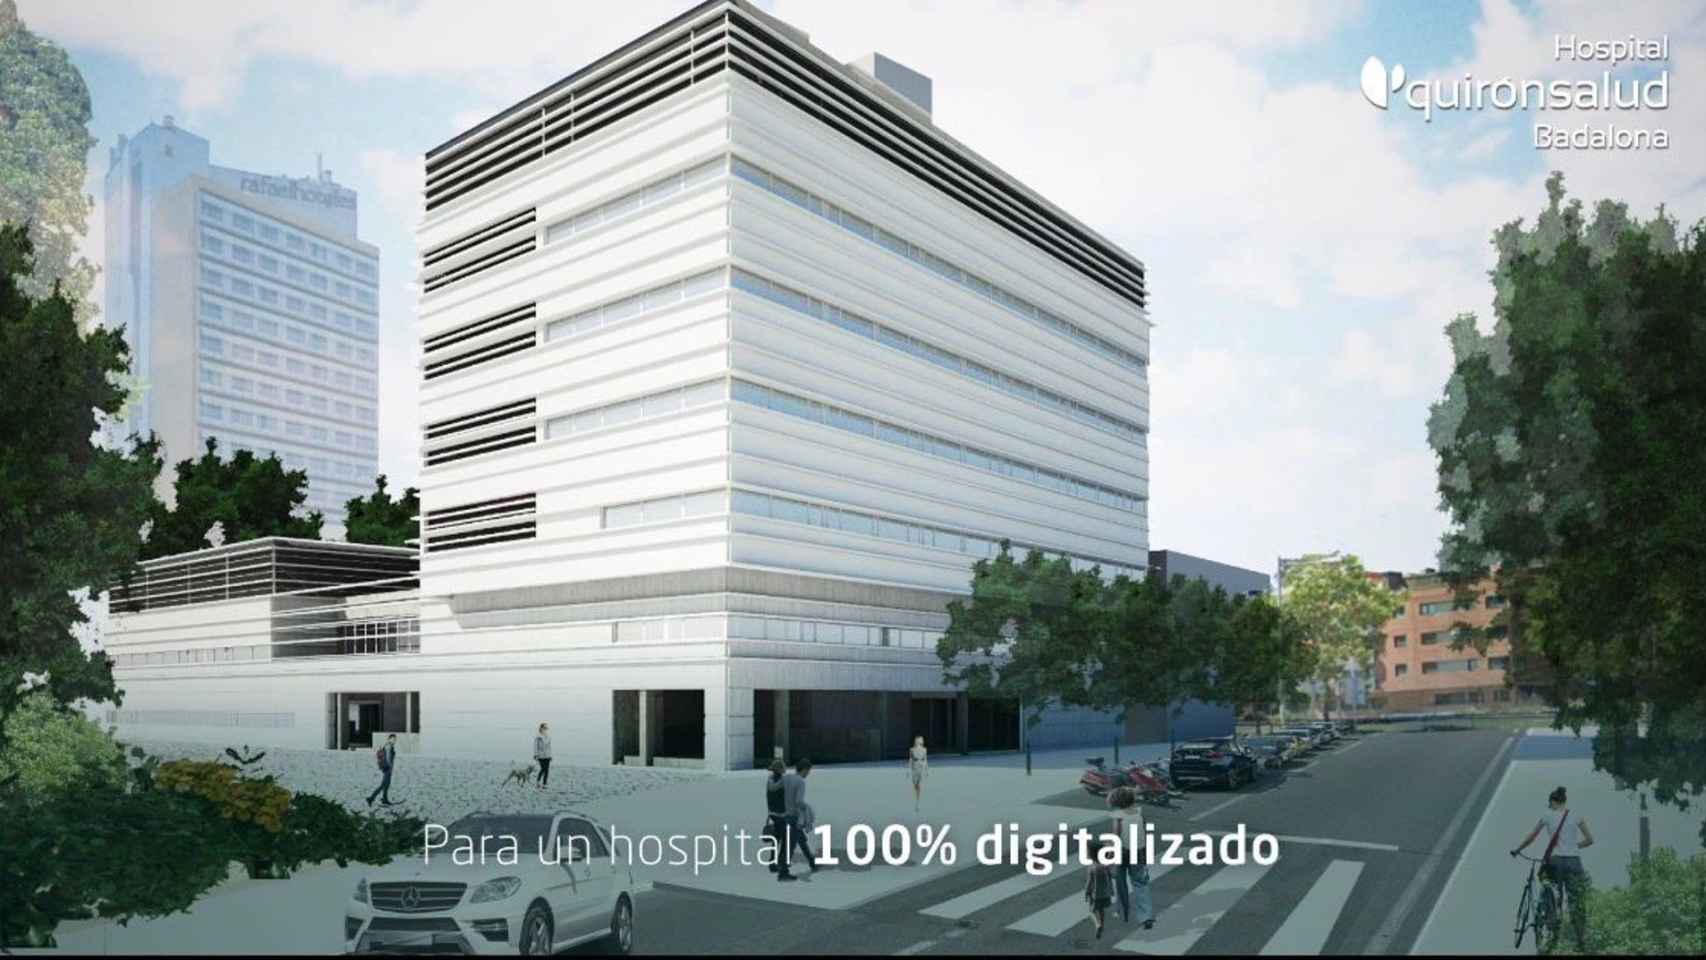 El nuevo hospital privado de Quirónsalud en Badalona que se inaugurará en 2023 / QUIRÓNSALUD